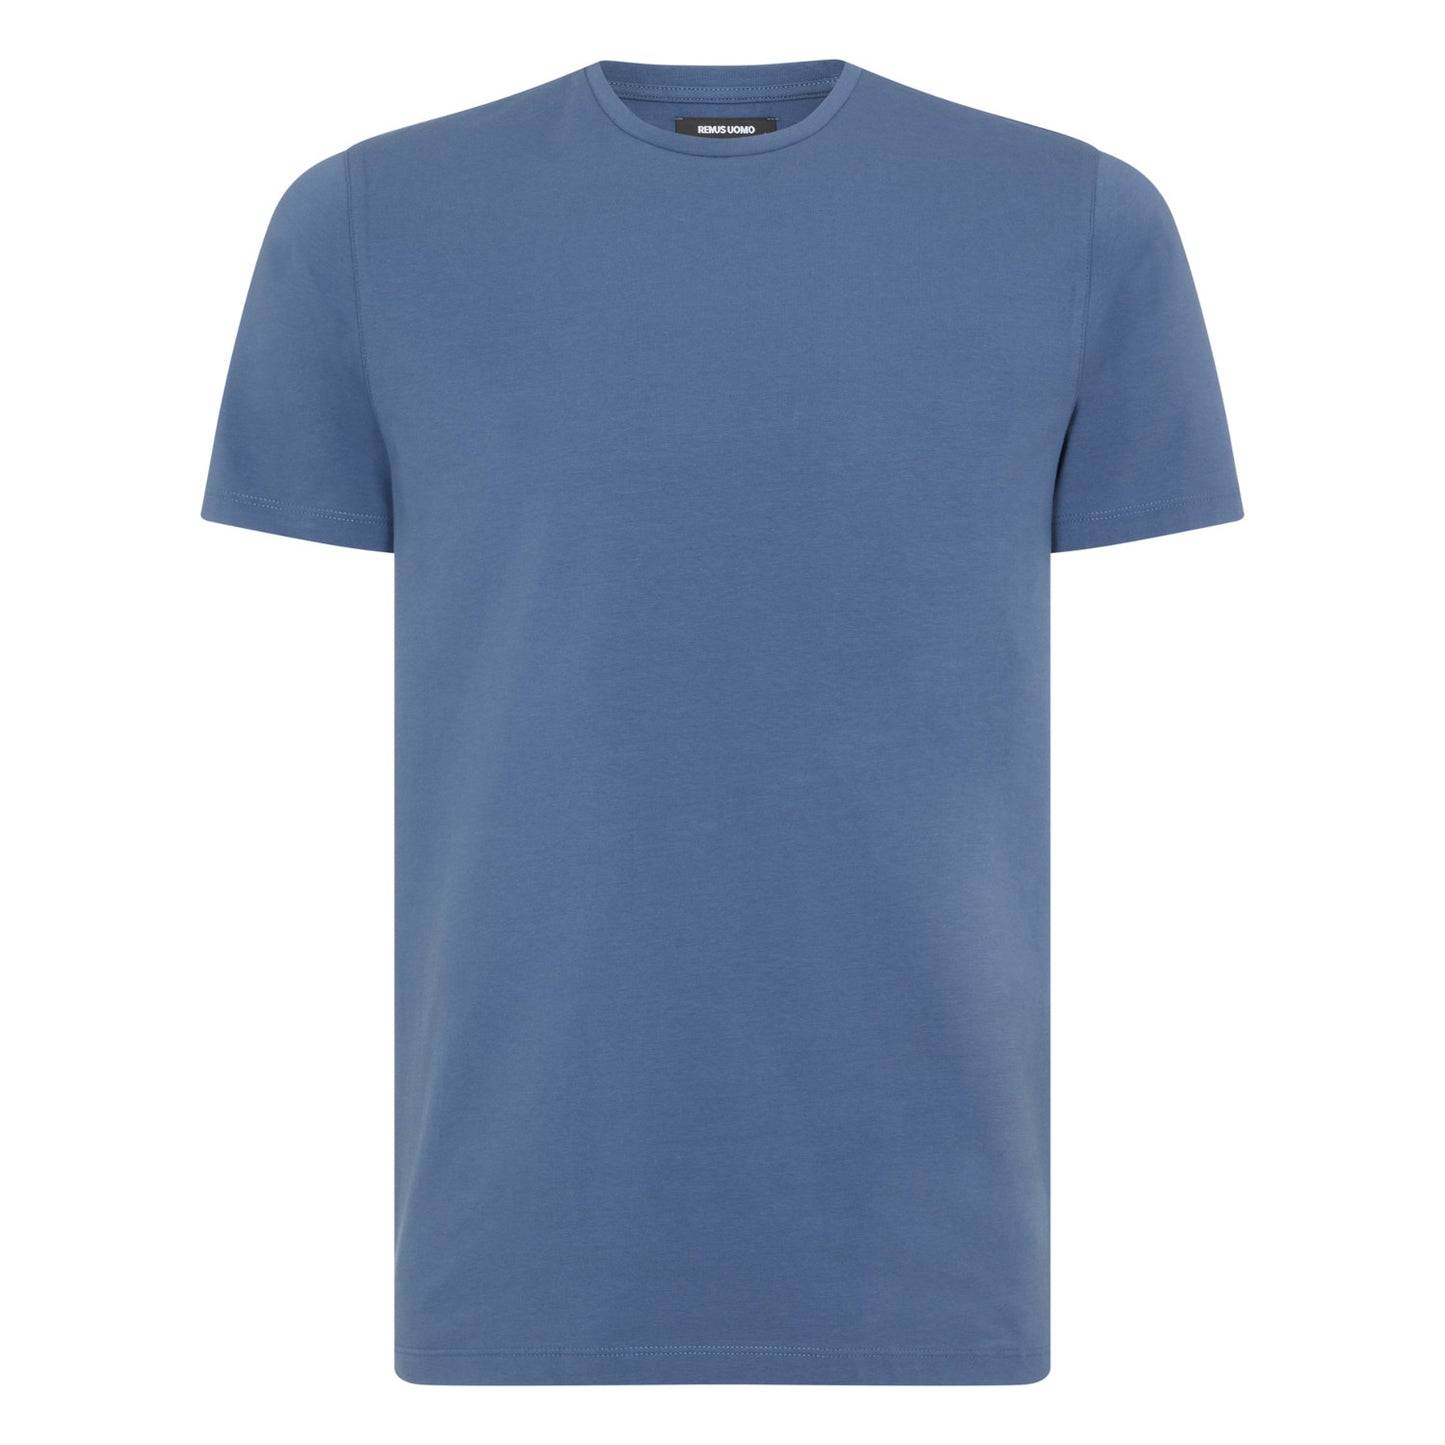 Remus Uomo 53121 25 Air Force Blue T-Shirt